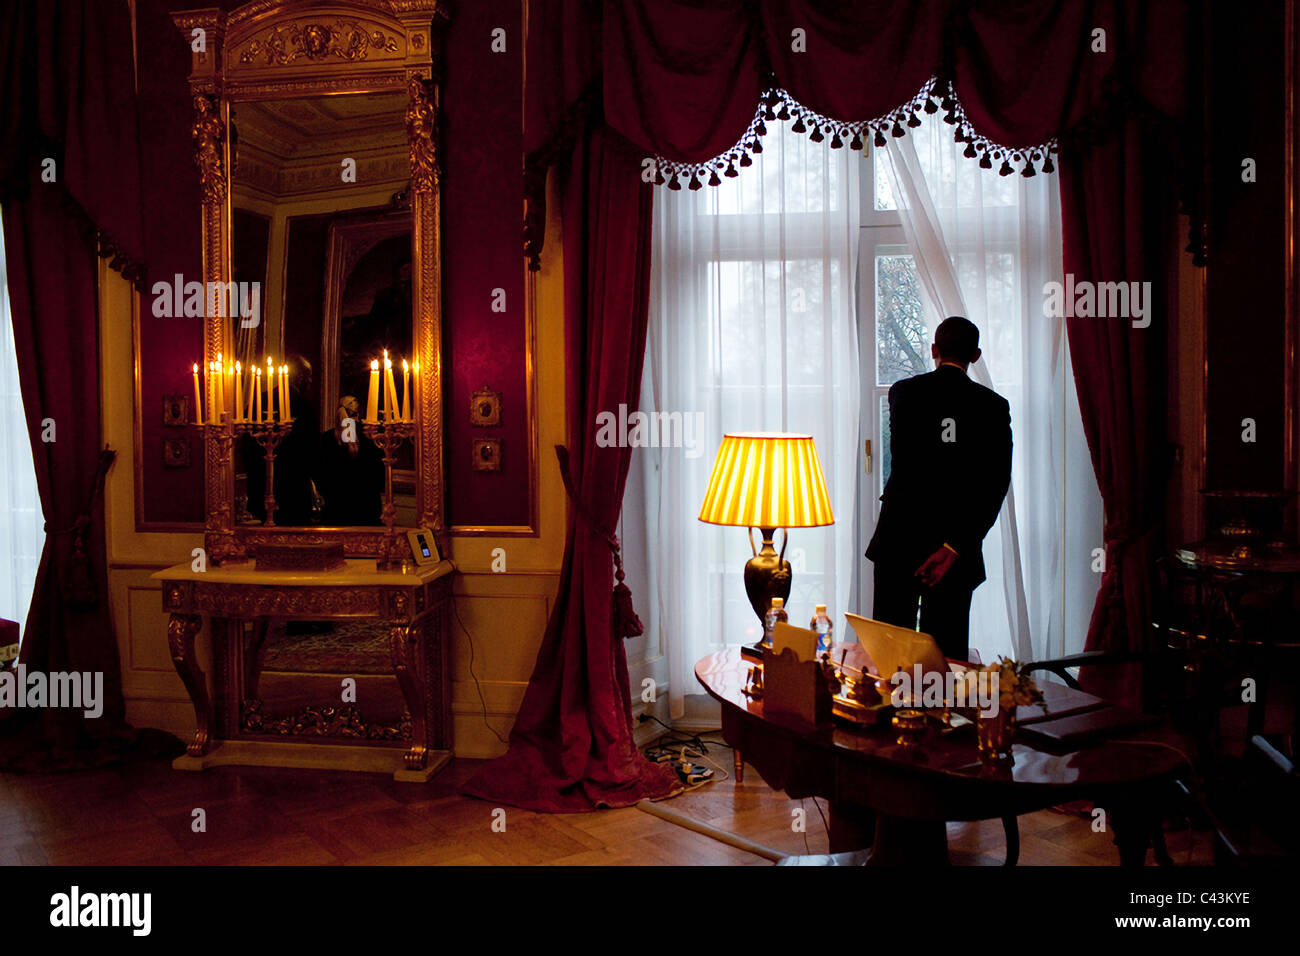 Präsident Barack Obama sieht aus dem Fenster an Slottet königlichen Palast von Norwegen Stockfoto